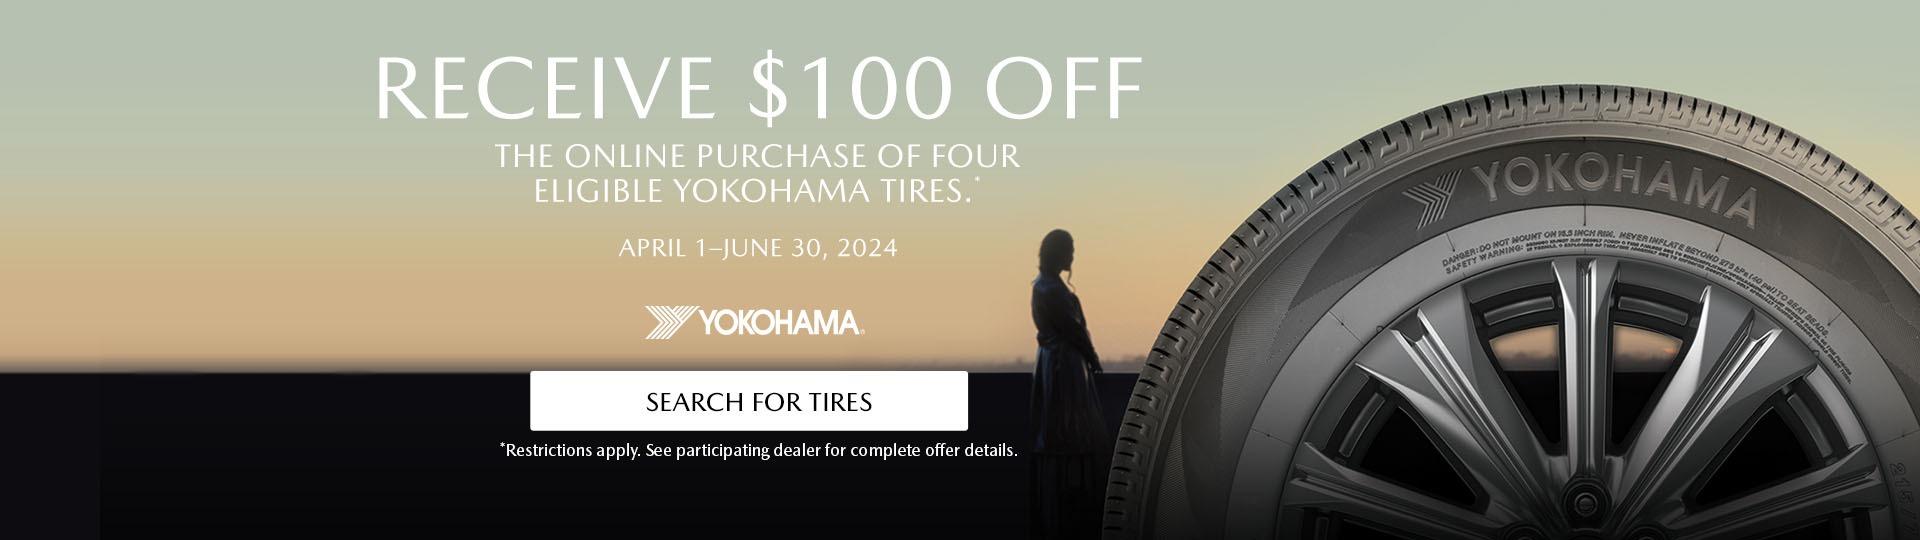 Spring $100 Yokohama Instant Rebate